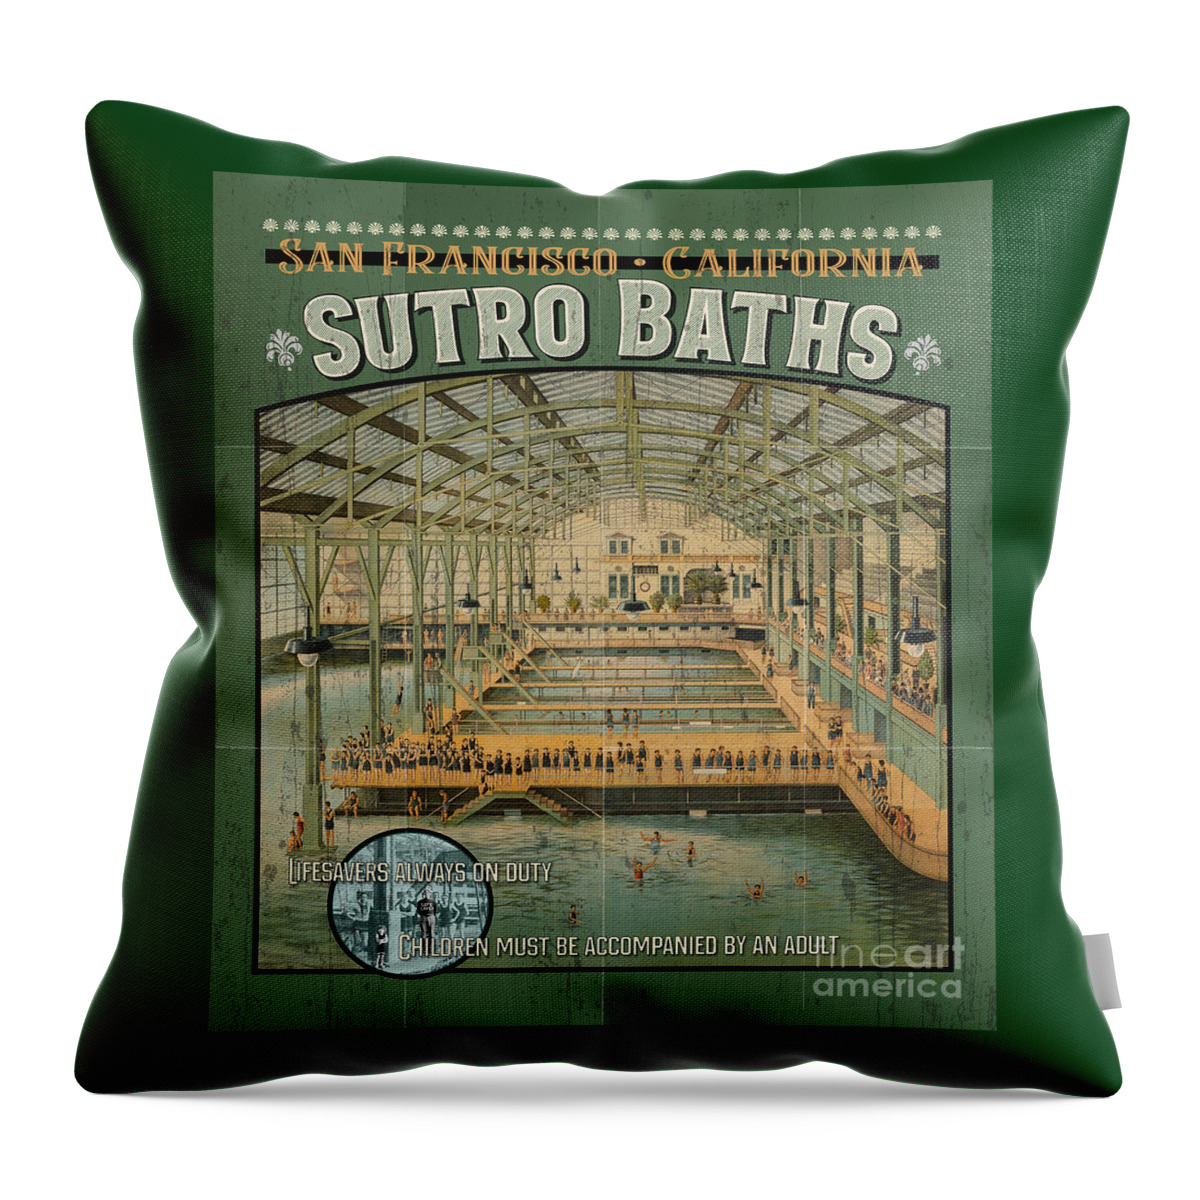 Sutro Baths Throw Pillow featuring the digital art Sutro Baths Poster by Brian Watt